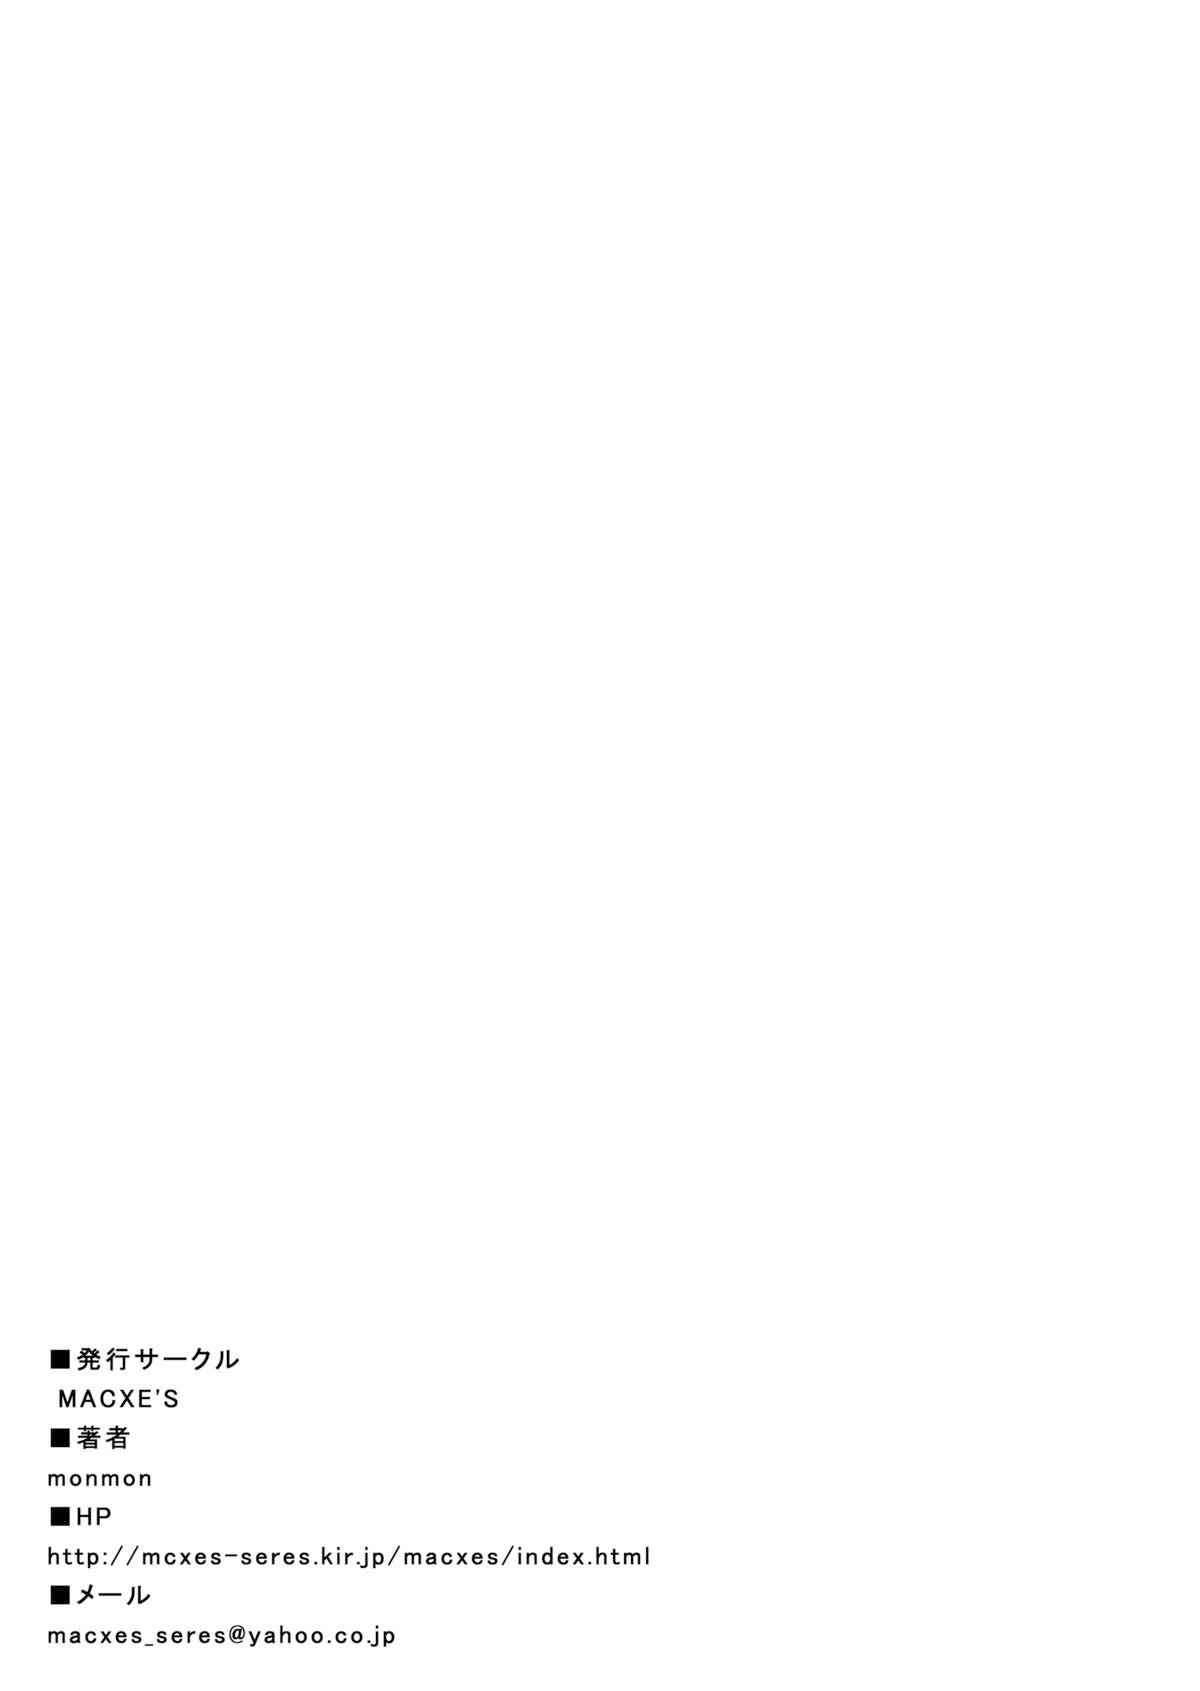 Candid [MACXE'S (monmon)] Mou Hitotsu no Ketsumatsu ~Henshin Heroine Kairaku Sennou Yes!! Precure 5 Hen~ 另一个结局 变身女英雄快乐洗脑 yes!! 光之美少女5篇 第三话 (Yes! PreCure 5) [Chinese] [LLQ个人汉化] - Yes precure 5 Str8 - Page 35